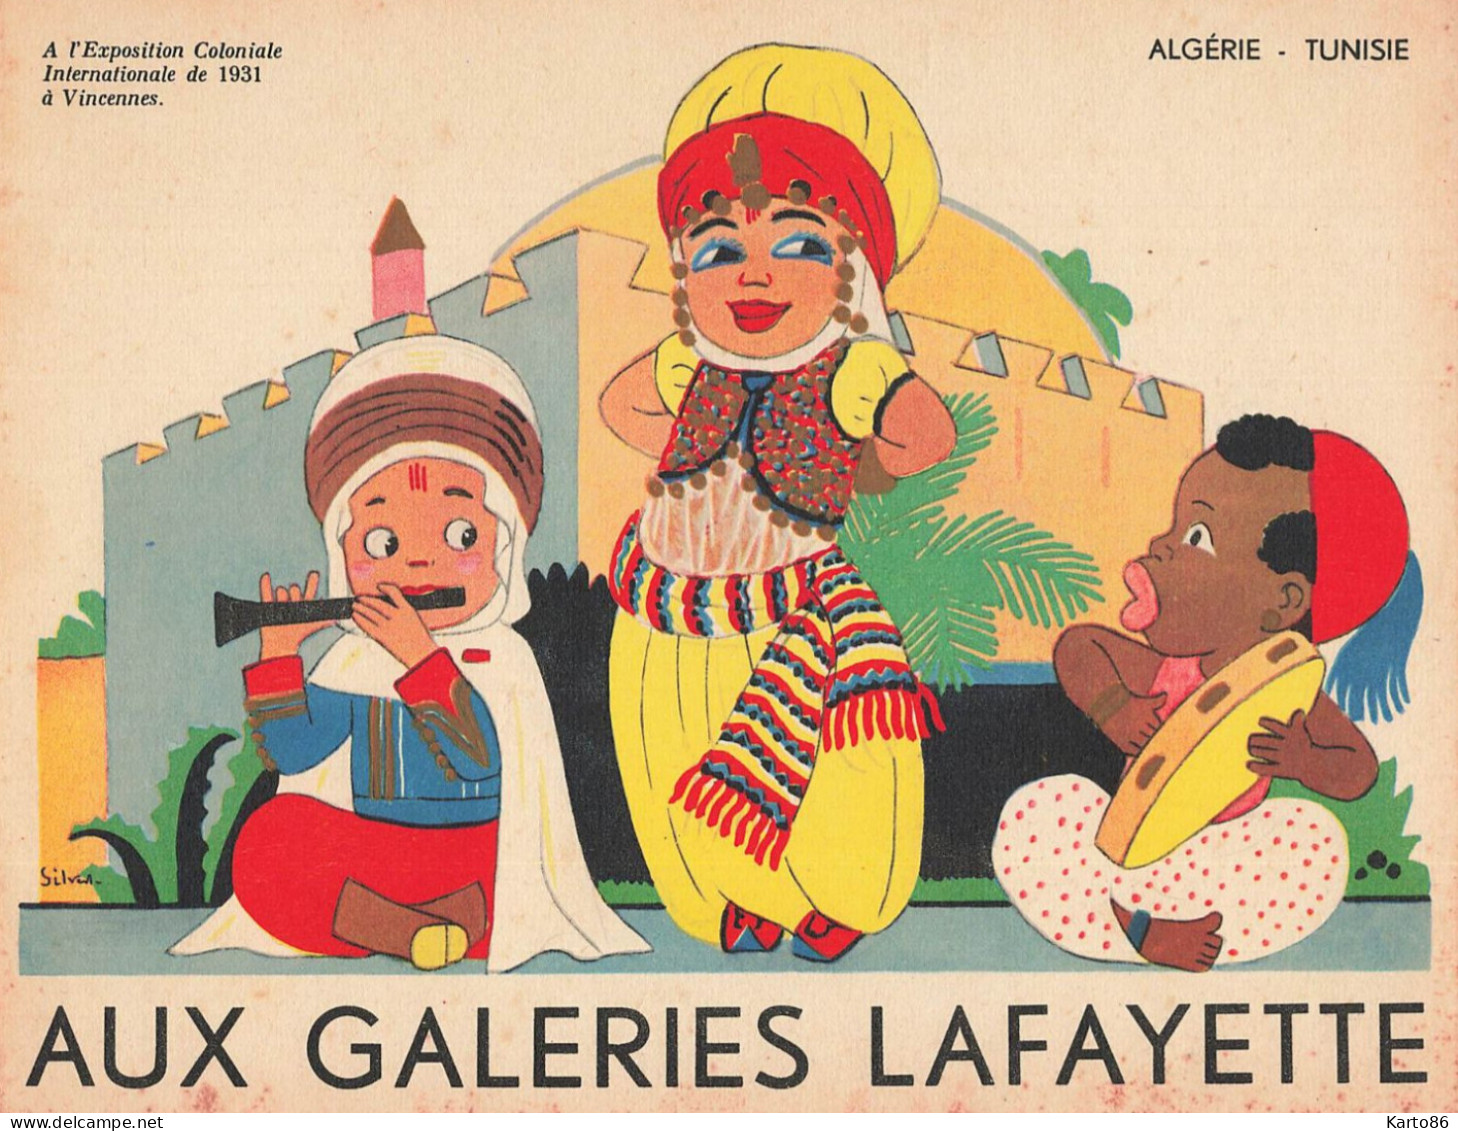 AUX GALERIES LAFAYETTE * 9 publicités illustrateur Silvestre * exposition coloniale vincennes 1931 éthnique ethno ethnic